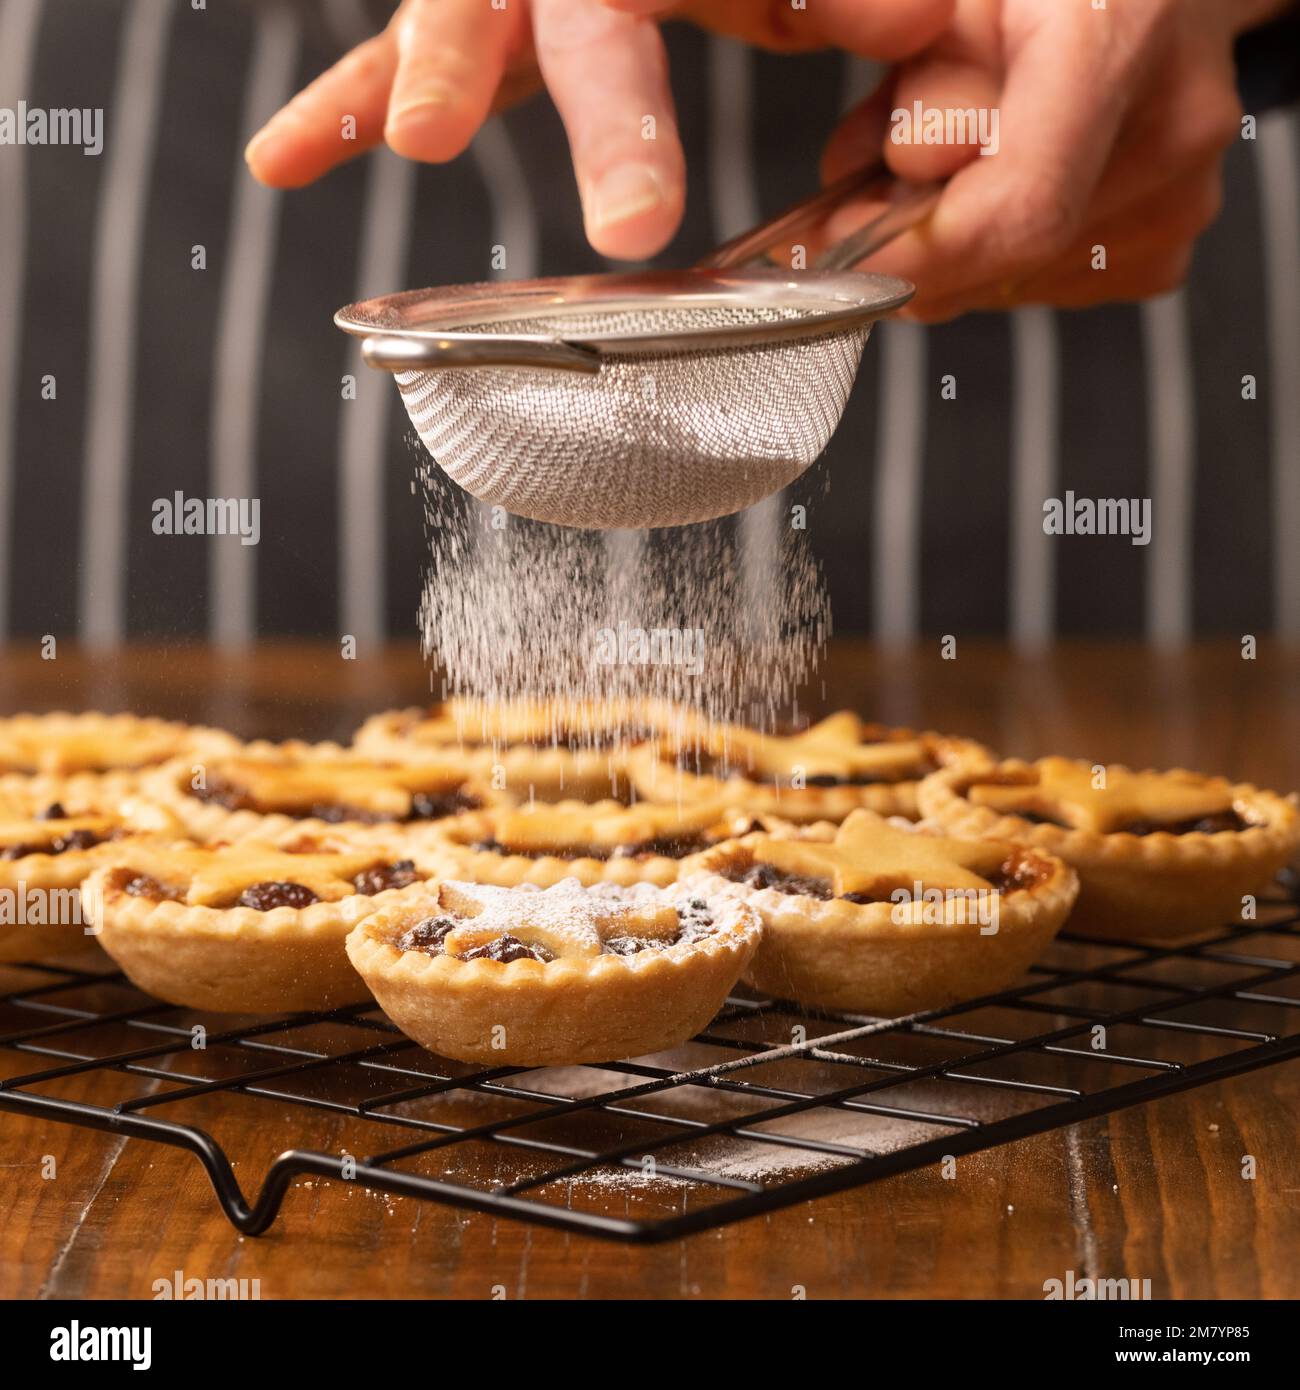 Hachez des tartes recouvertes d'étoiles de pâtisserie sur un support en métal dragué dans du sucre glace par une personne non identifiable dans un tablier à rayures noires. Banque D'Images